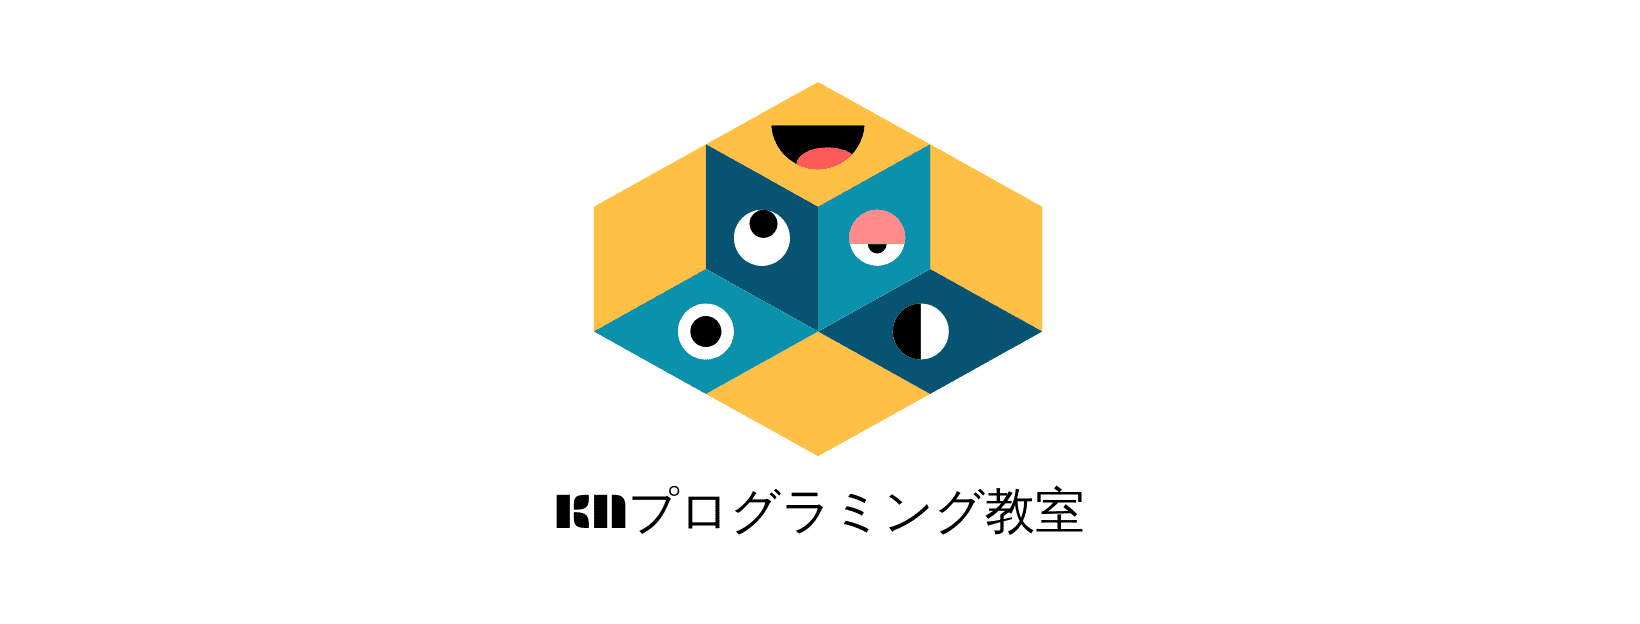 子どものためのKNプログラミング教室 | 神奈川県厚木市のKNプログラミング教室